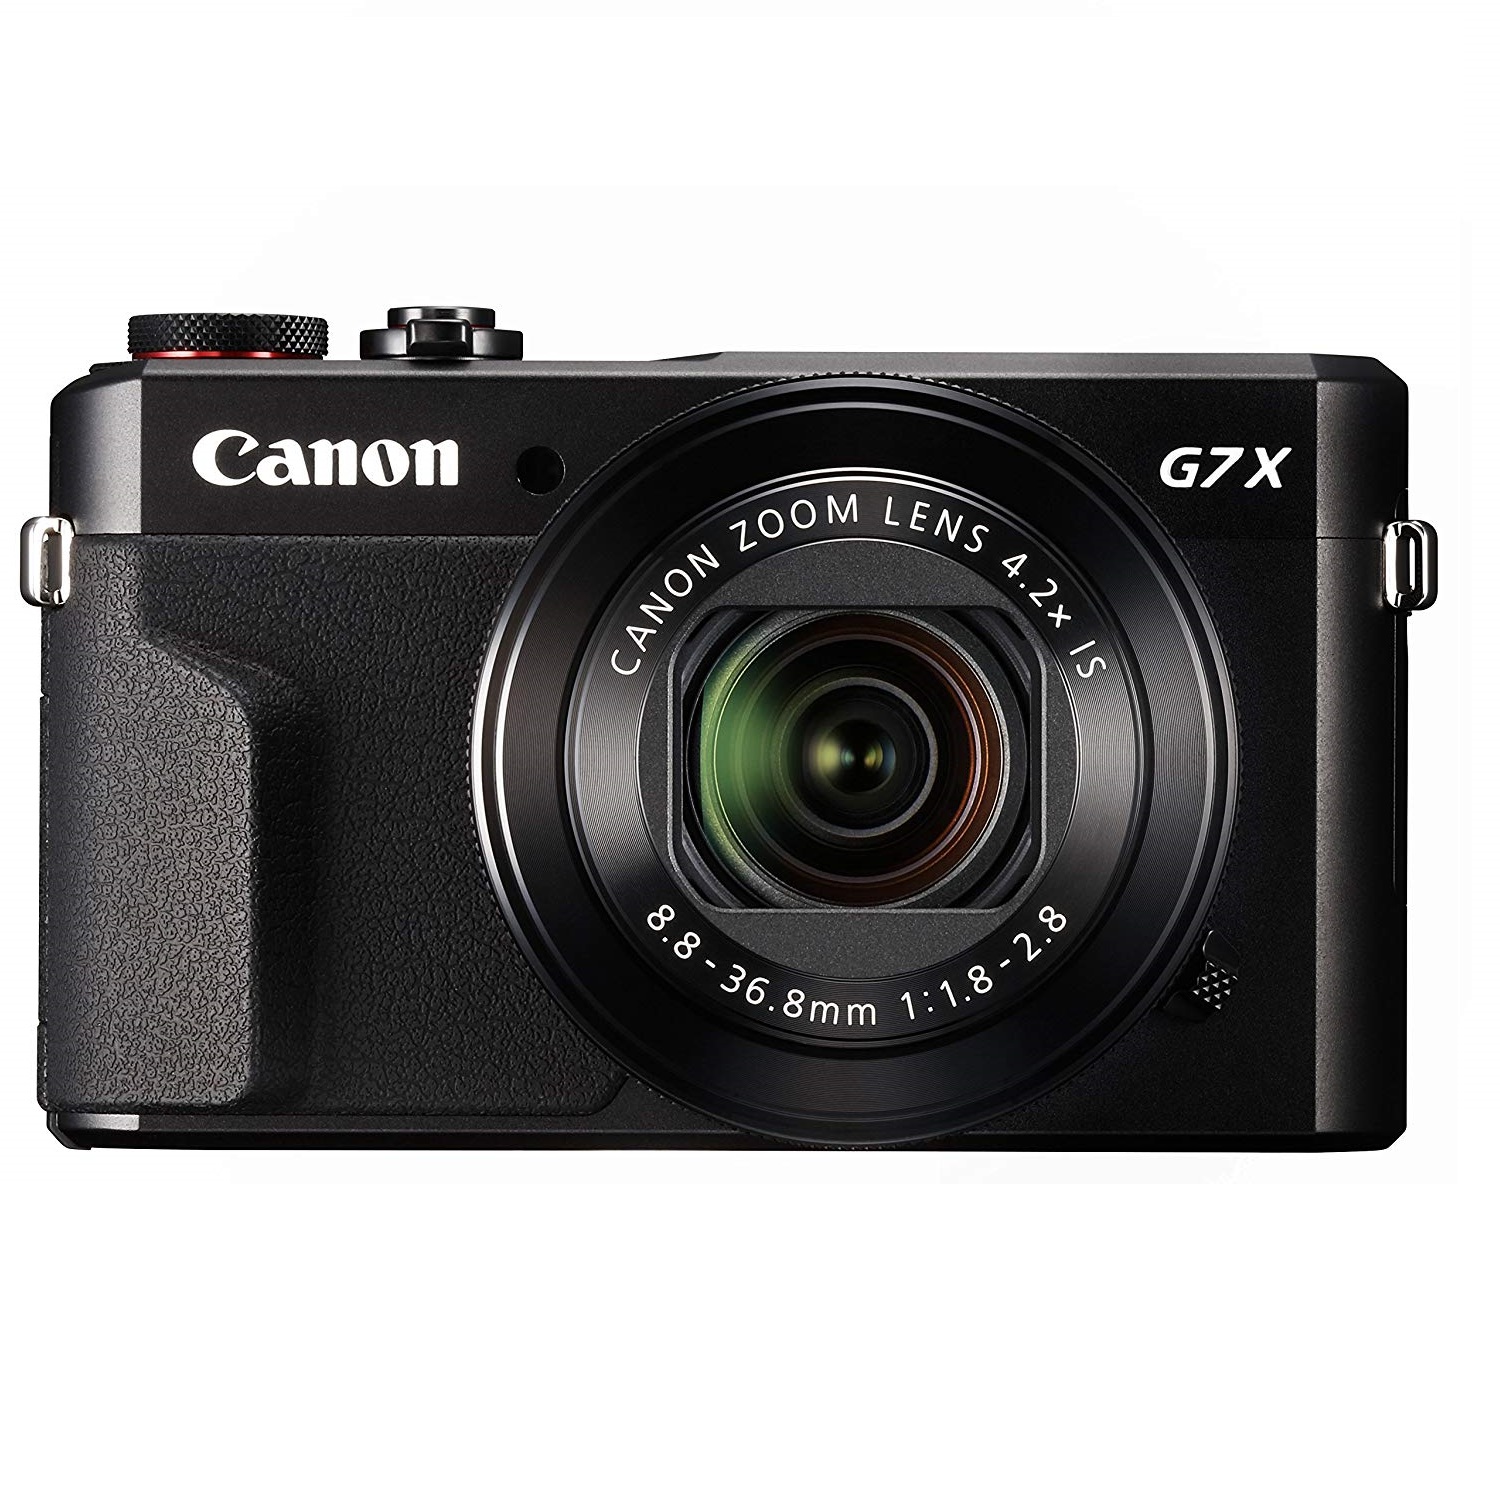 Canon デジタルカメラ PowerShot G7 X Mark II